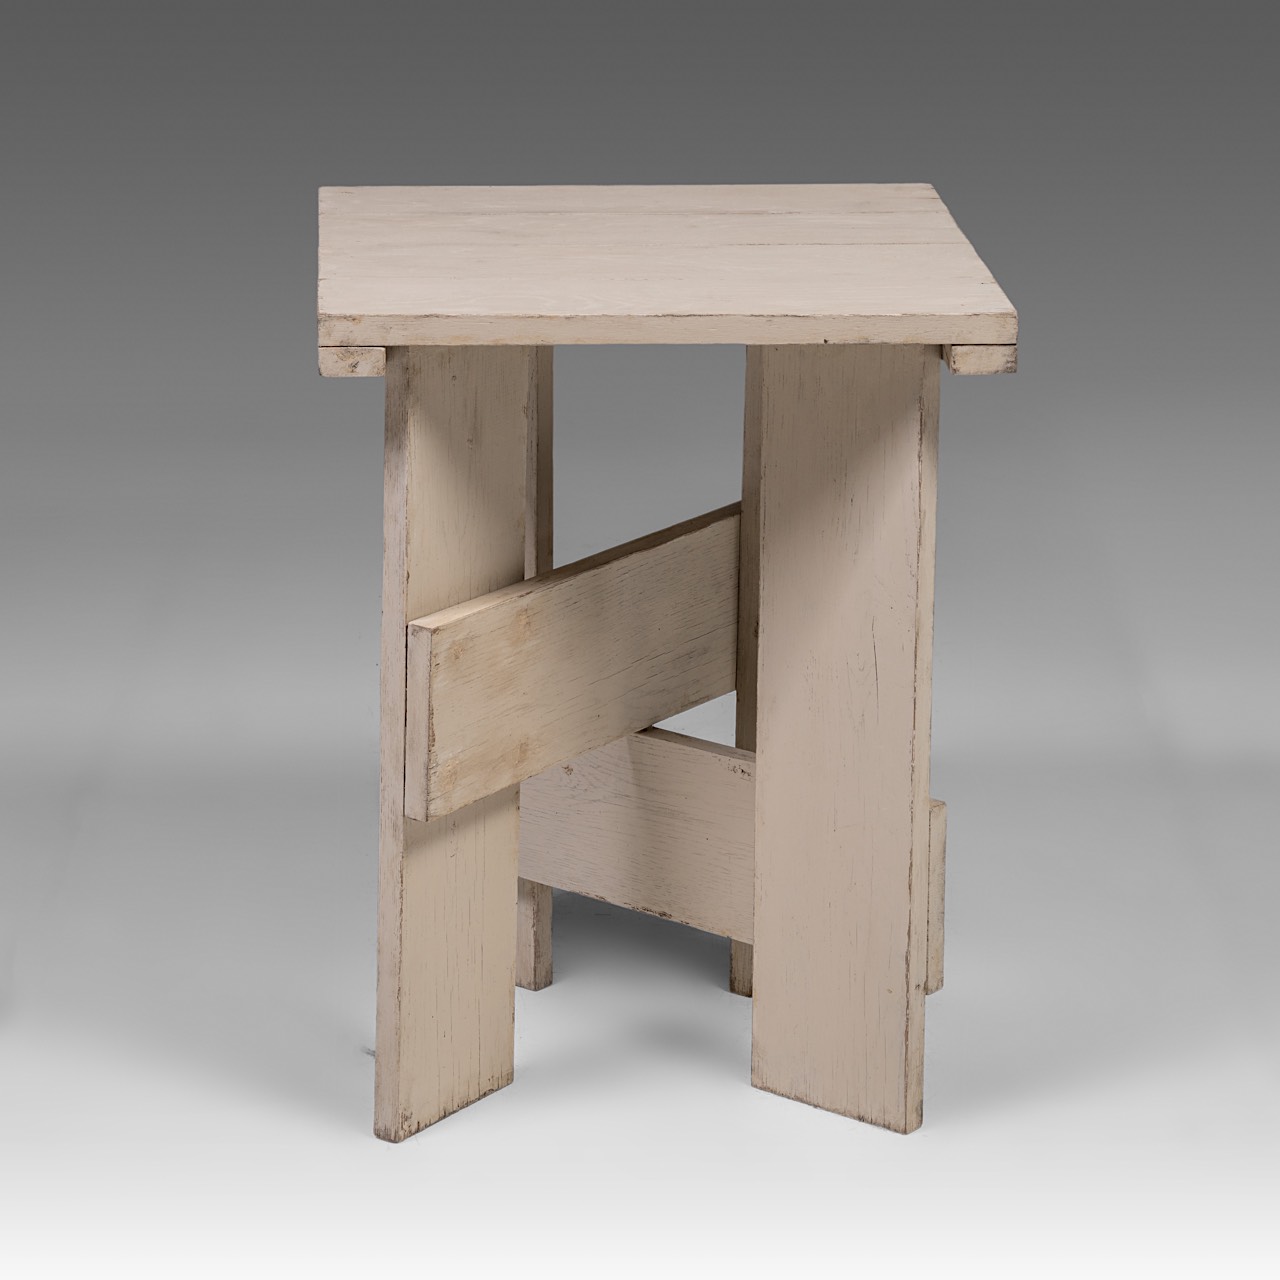 A decorative Low crate table after Gerrit Rietveld, H 63 - W 49 - D 47 cm - Bild 5 aus 7